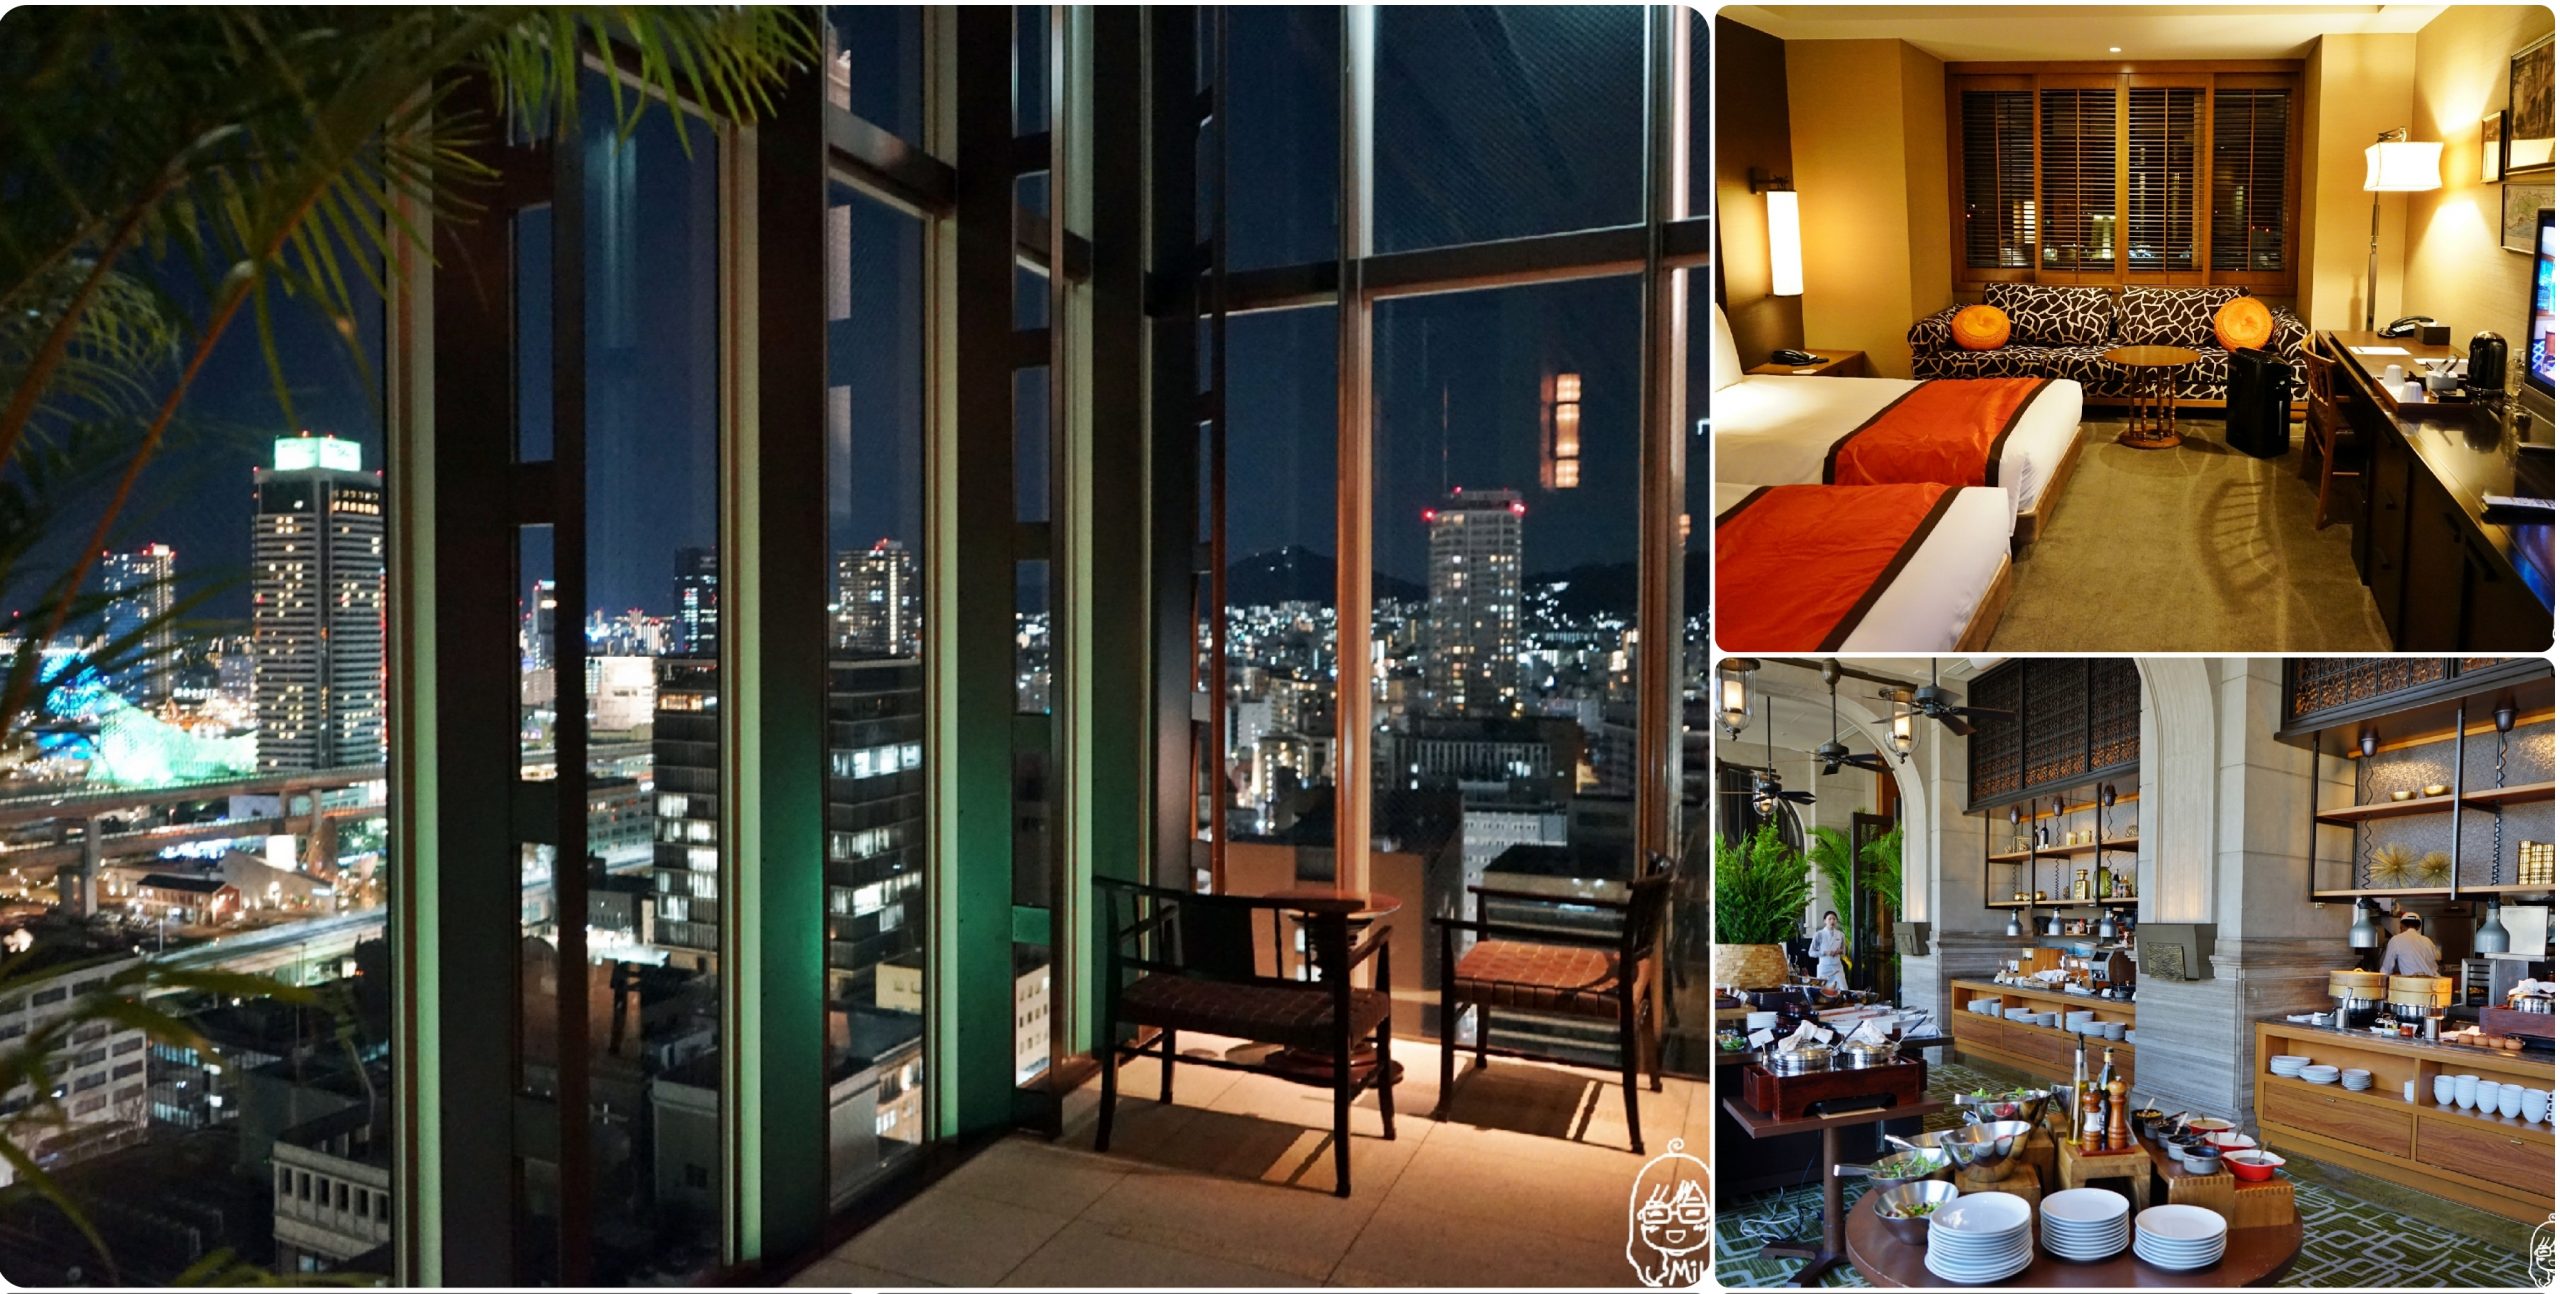 日本 神戶 Oriental Hotel Kobe 神戶東方飯店 歷史悠久有質感高檔精品飯店